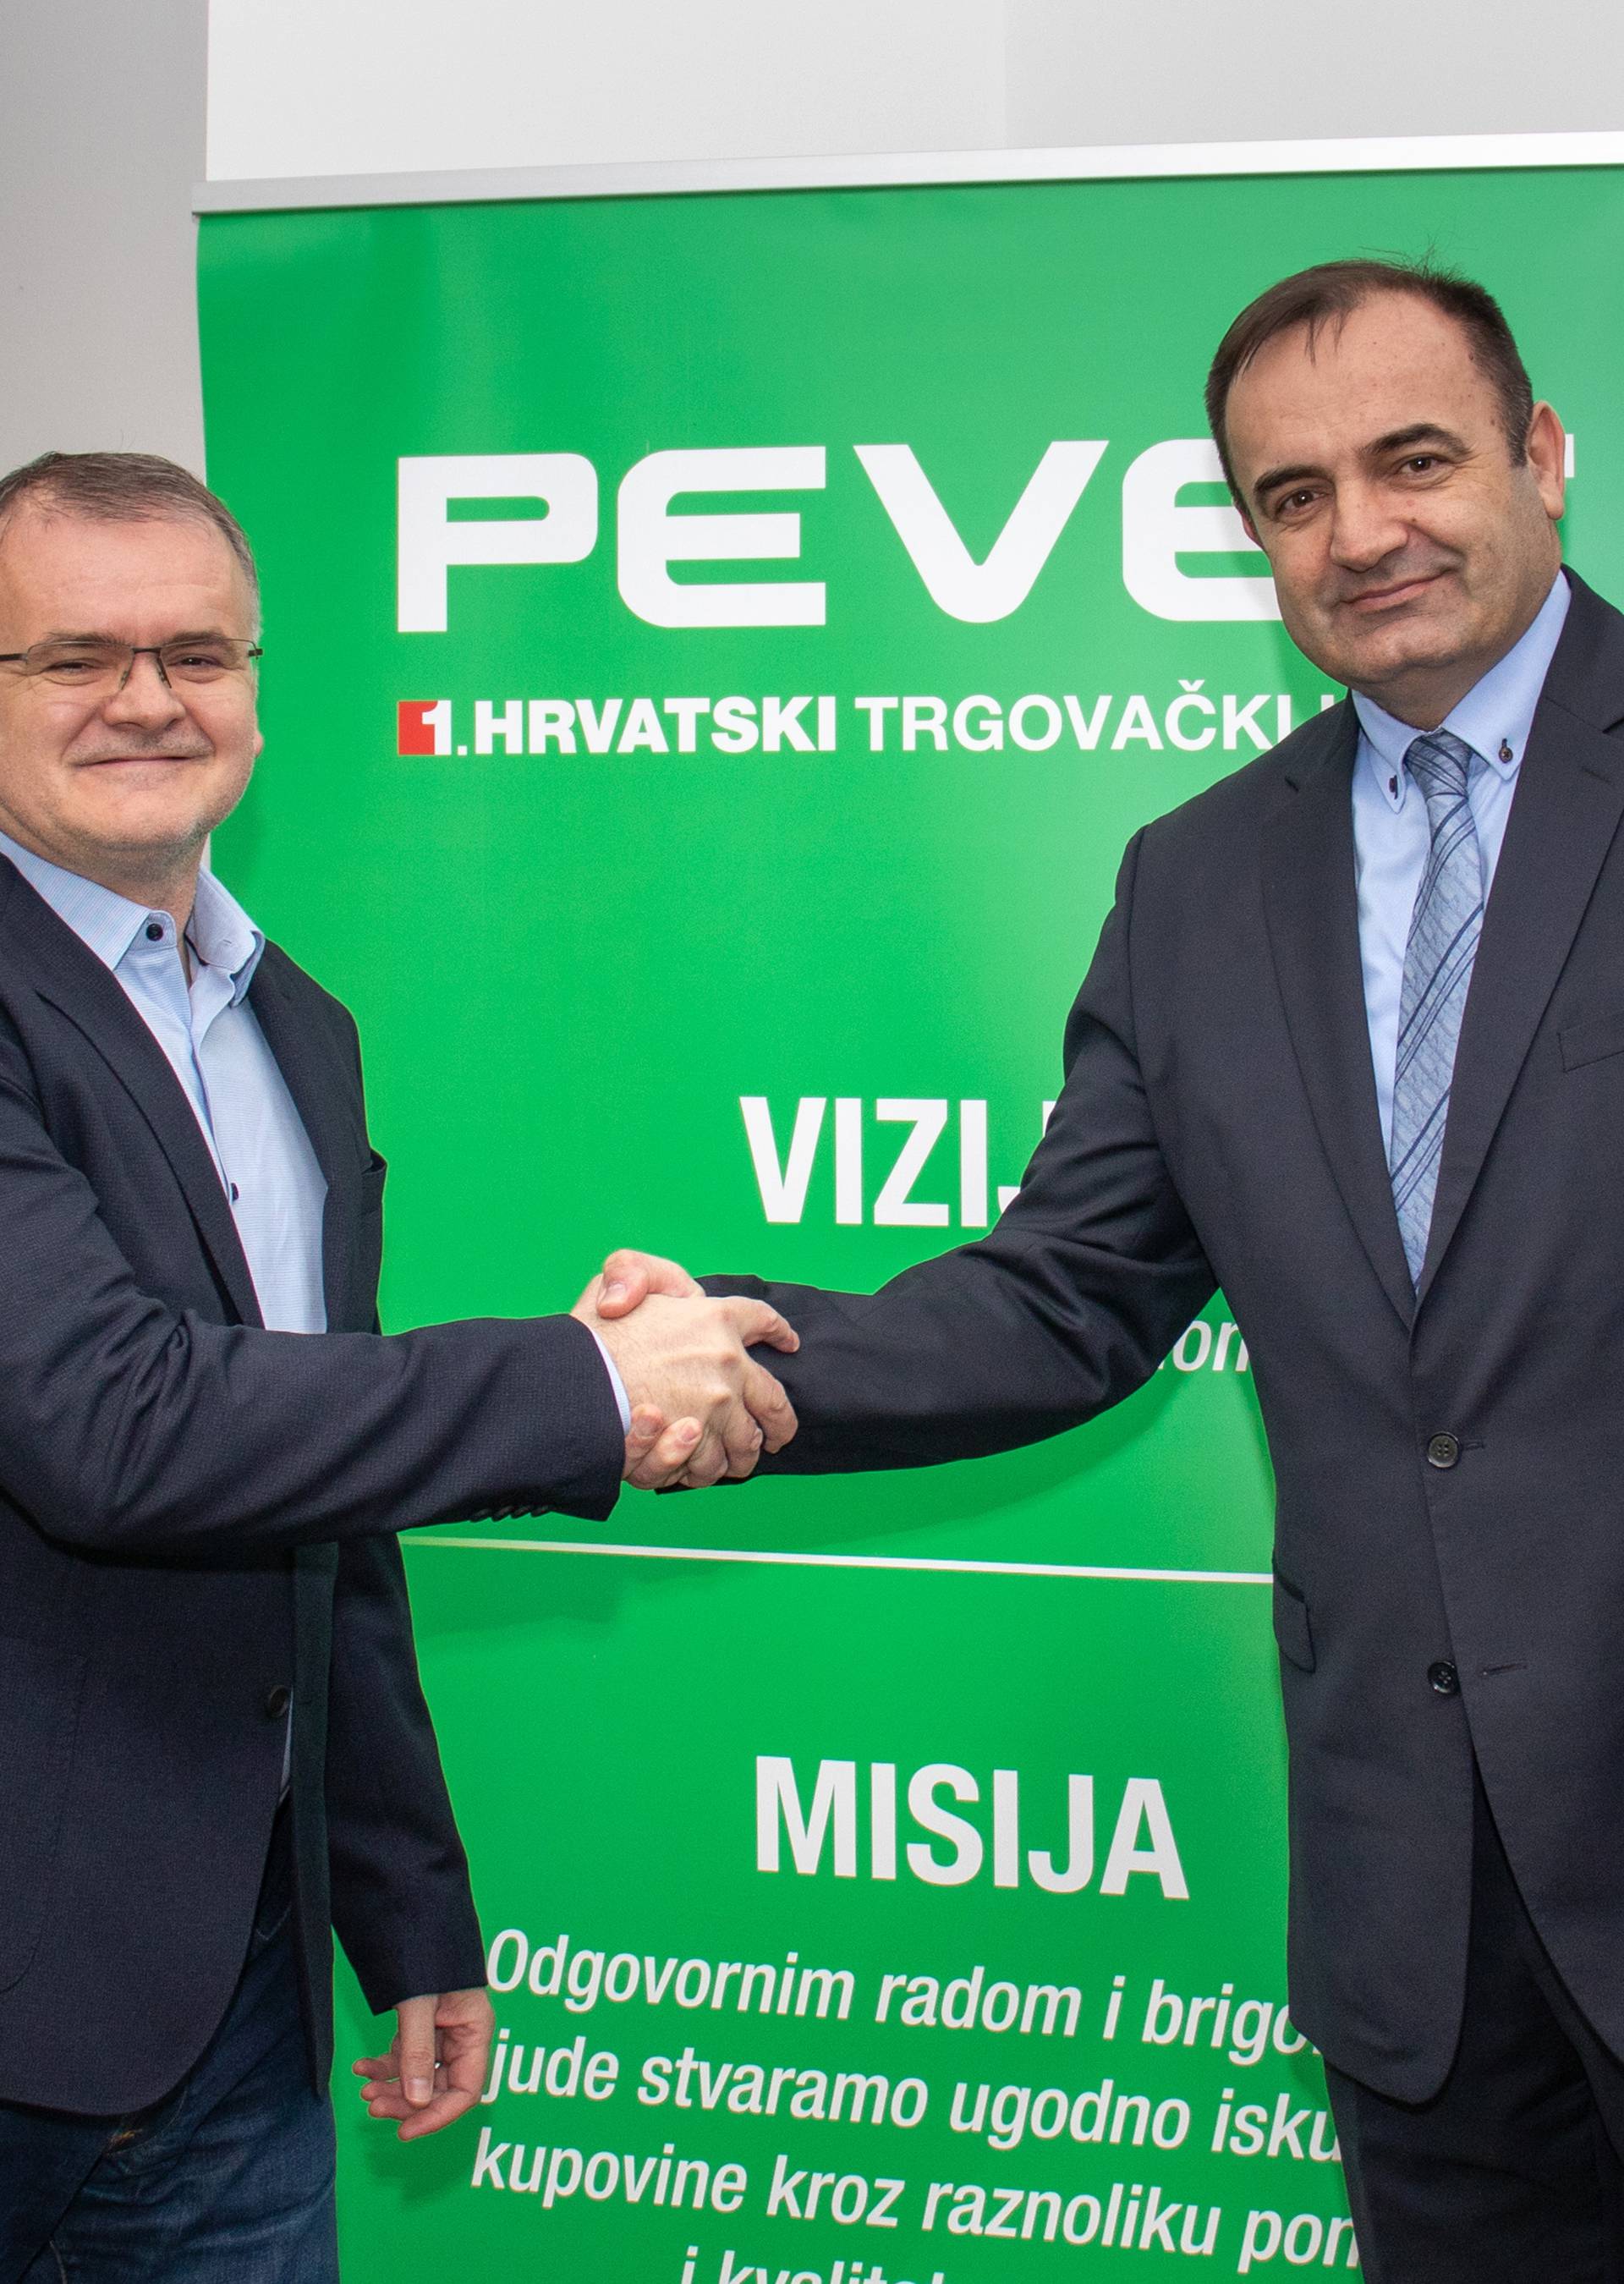 Pevec potpisao ugovor o izgradnji centra u Vinkovcima